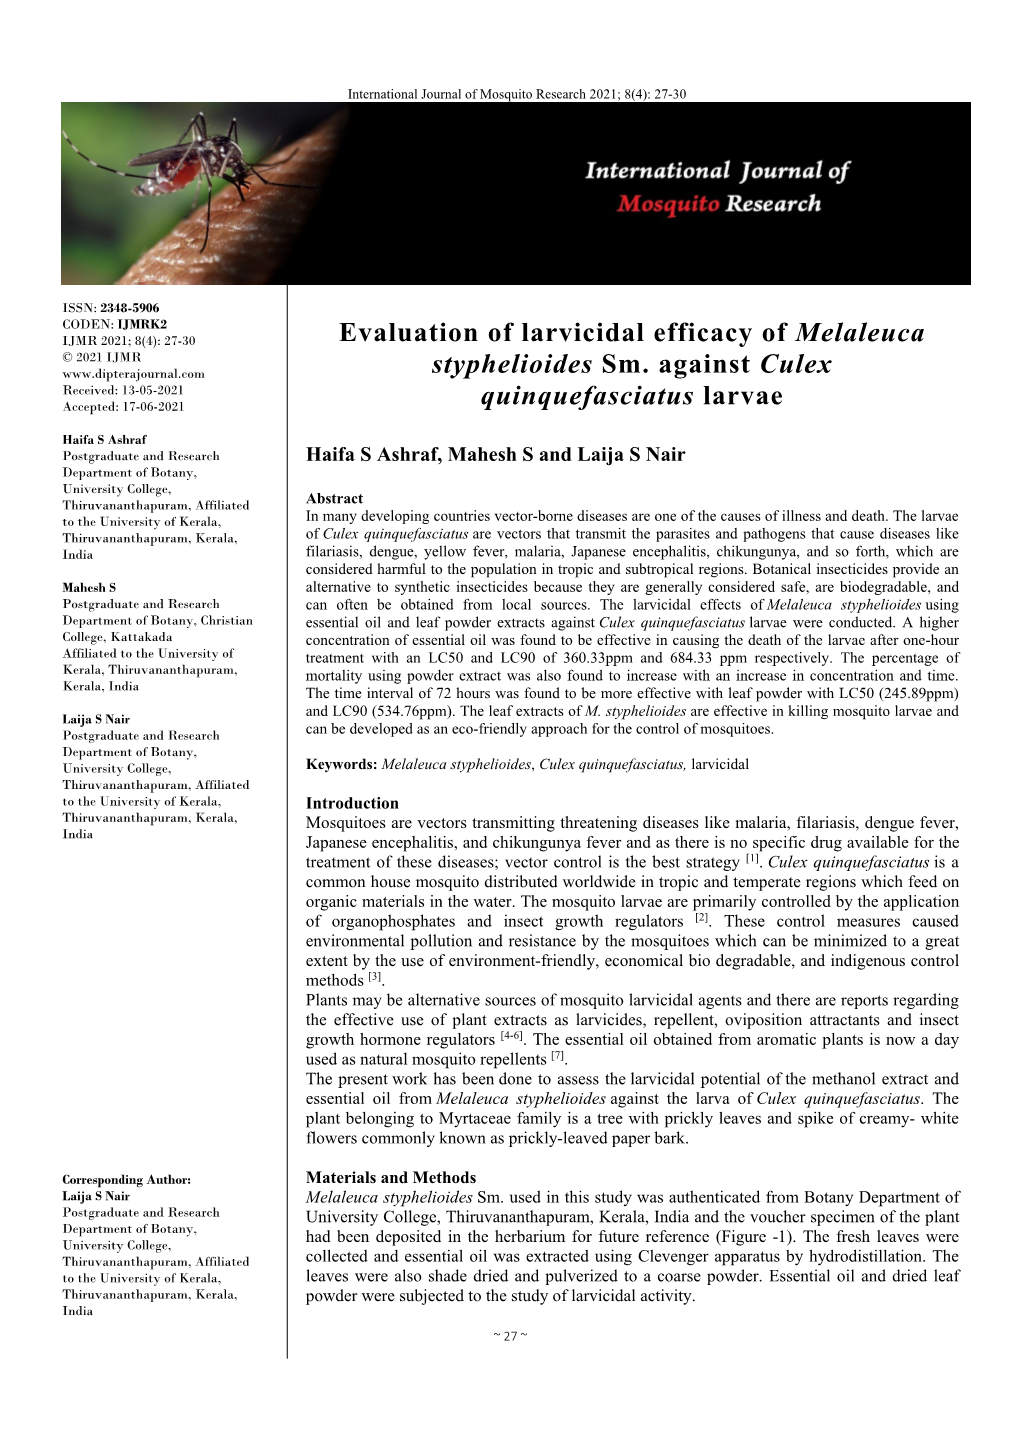 Evaluation of Larvicidal Efficacy of Melaleuca Styphelioides Sm